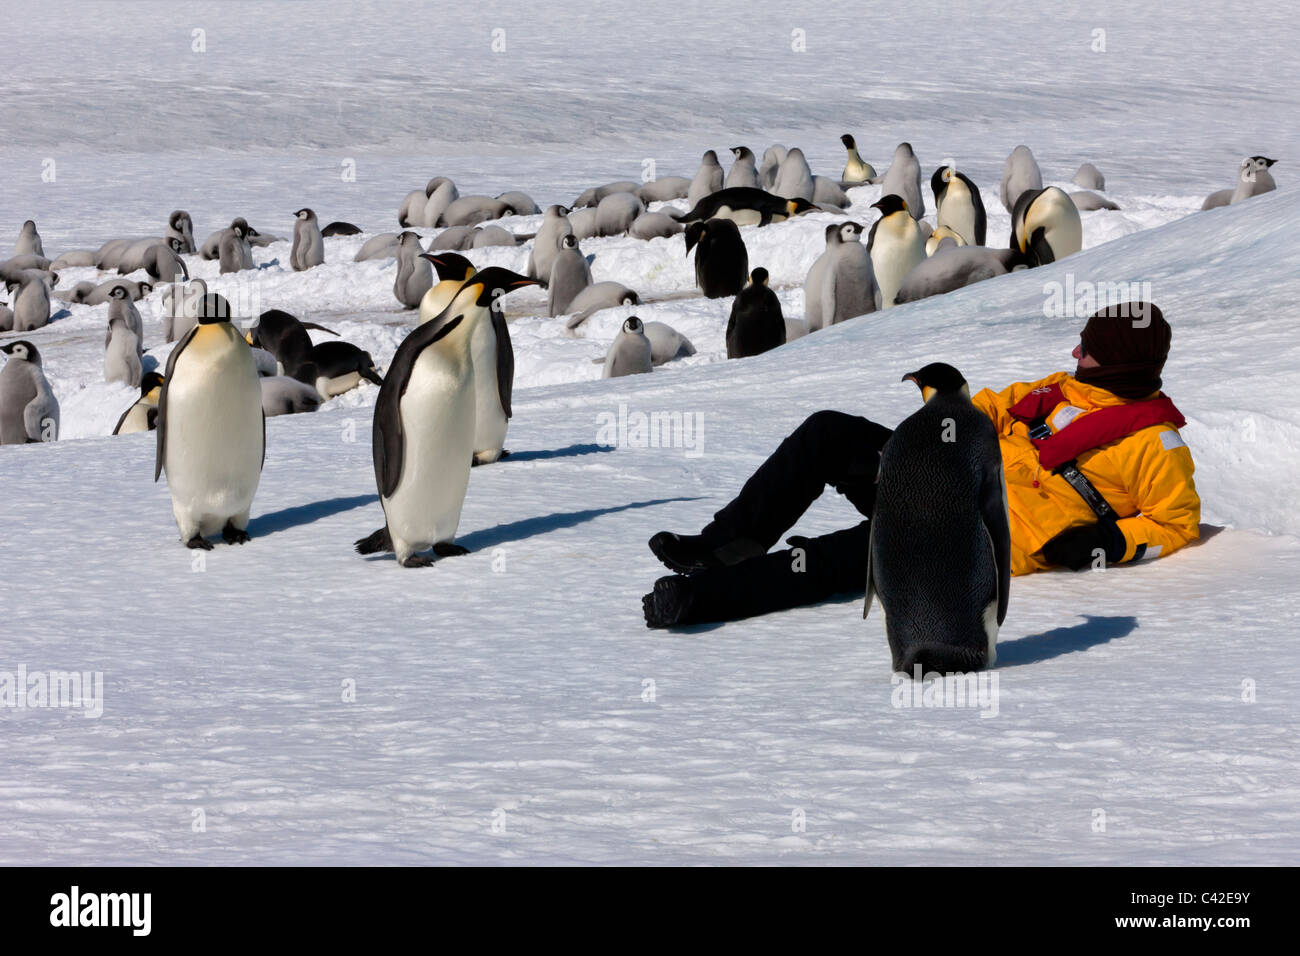 1 maschio confortevole Eco- tourist rilassante sulla neve circondato da curiosi Pinguini imperatore a friendly imperatore colonia di pinguini Antartide sulla neve ghiaccio Foto Stock